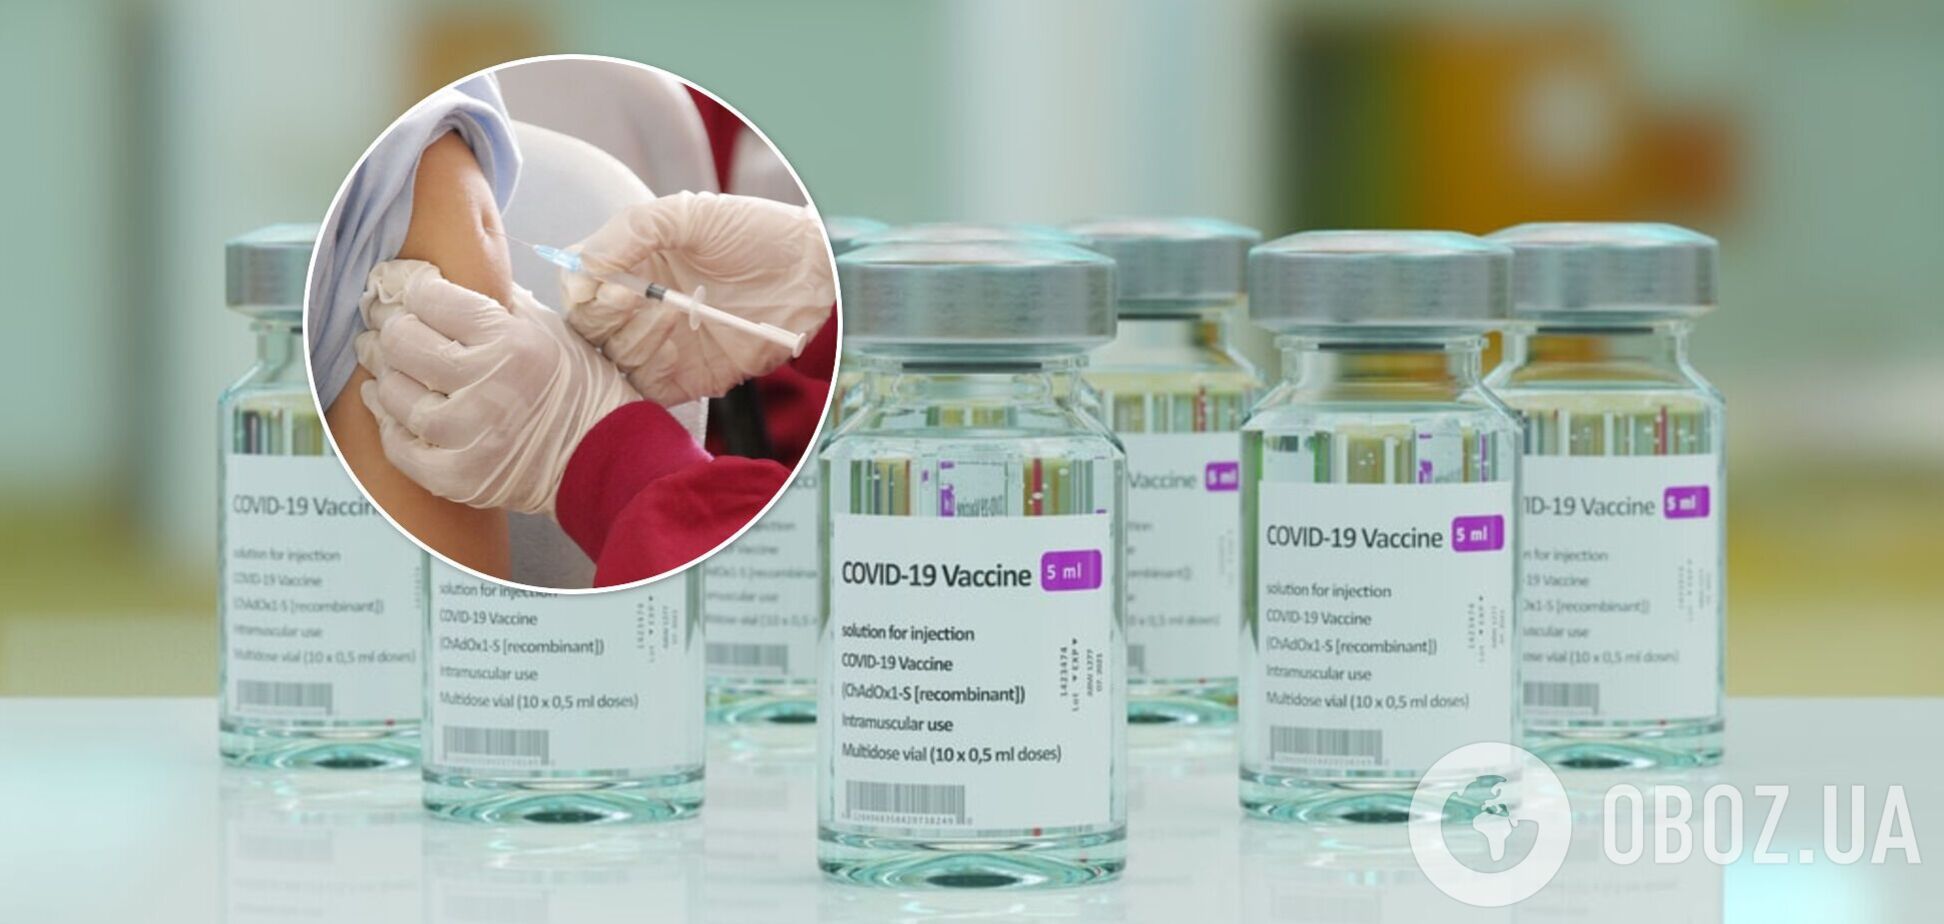 Вакцинированные в 99% случаев не попадают в реанимацию: врач объяснил, как прививка от COVID-19 может спасти жизнь